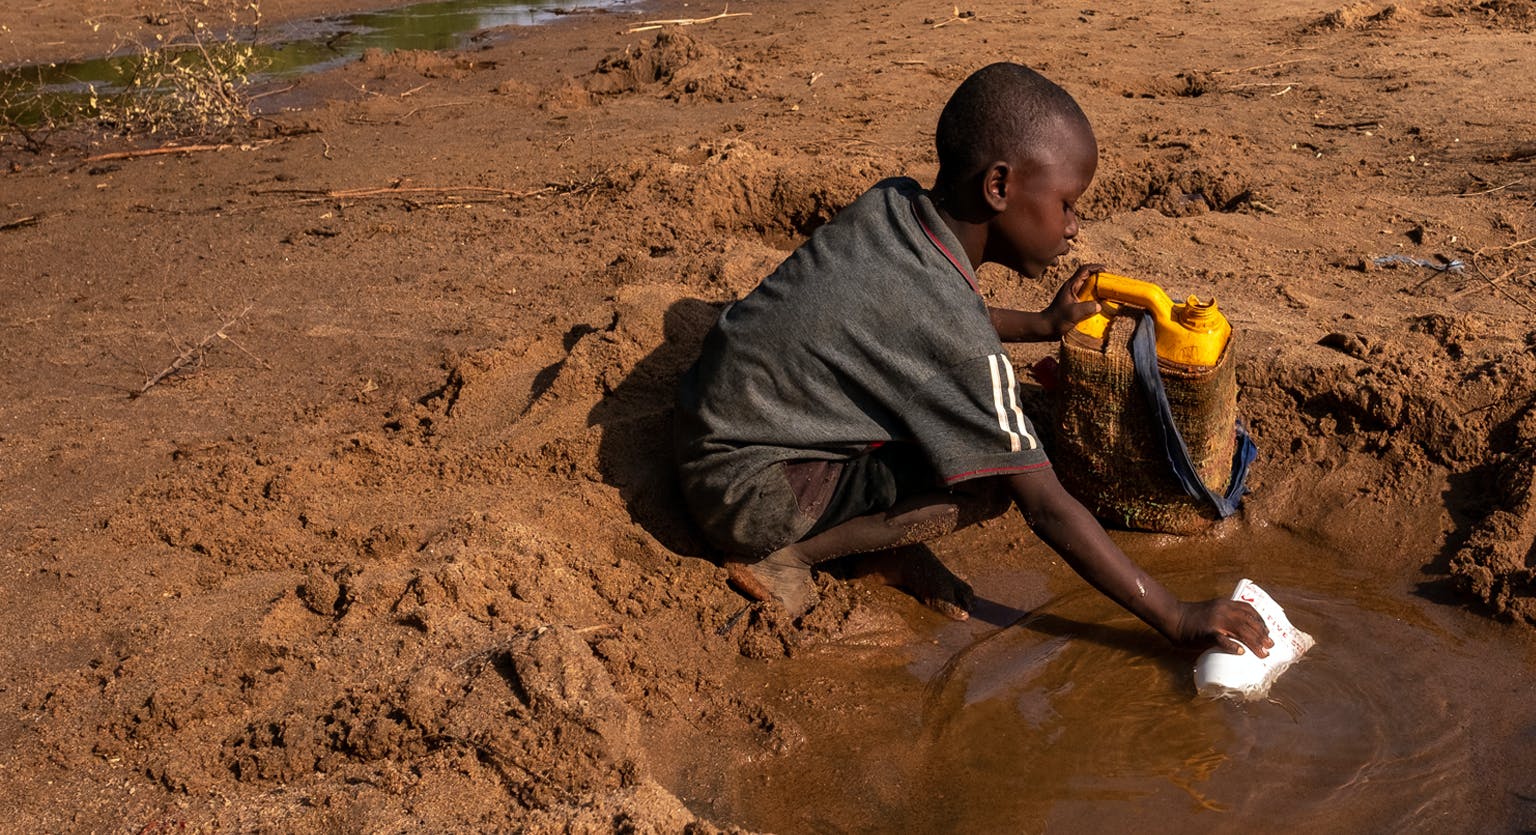 Africa orientale, una siccità apocalittica: l'allarme Onu, Oxfam in campo